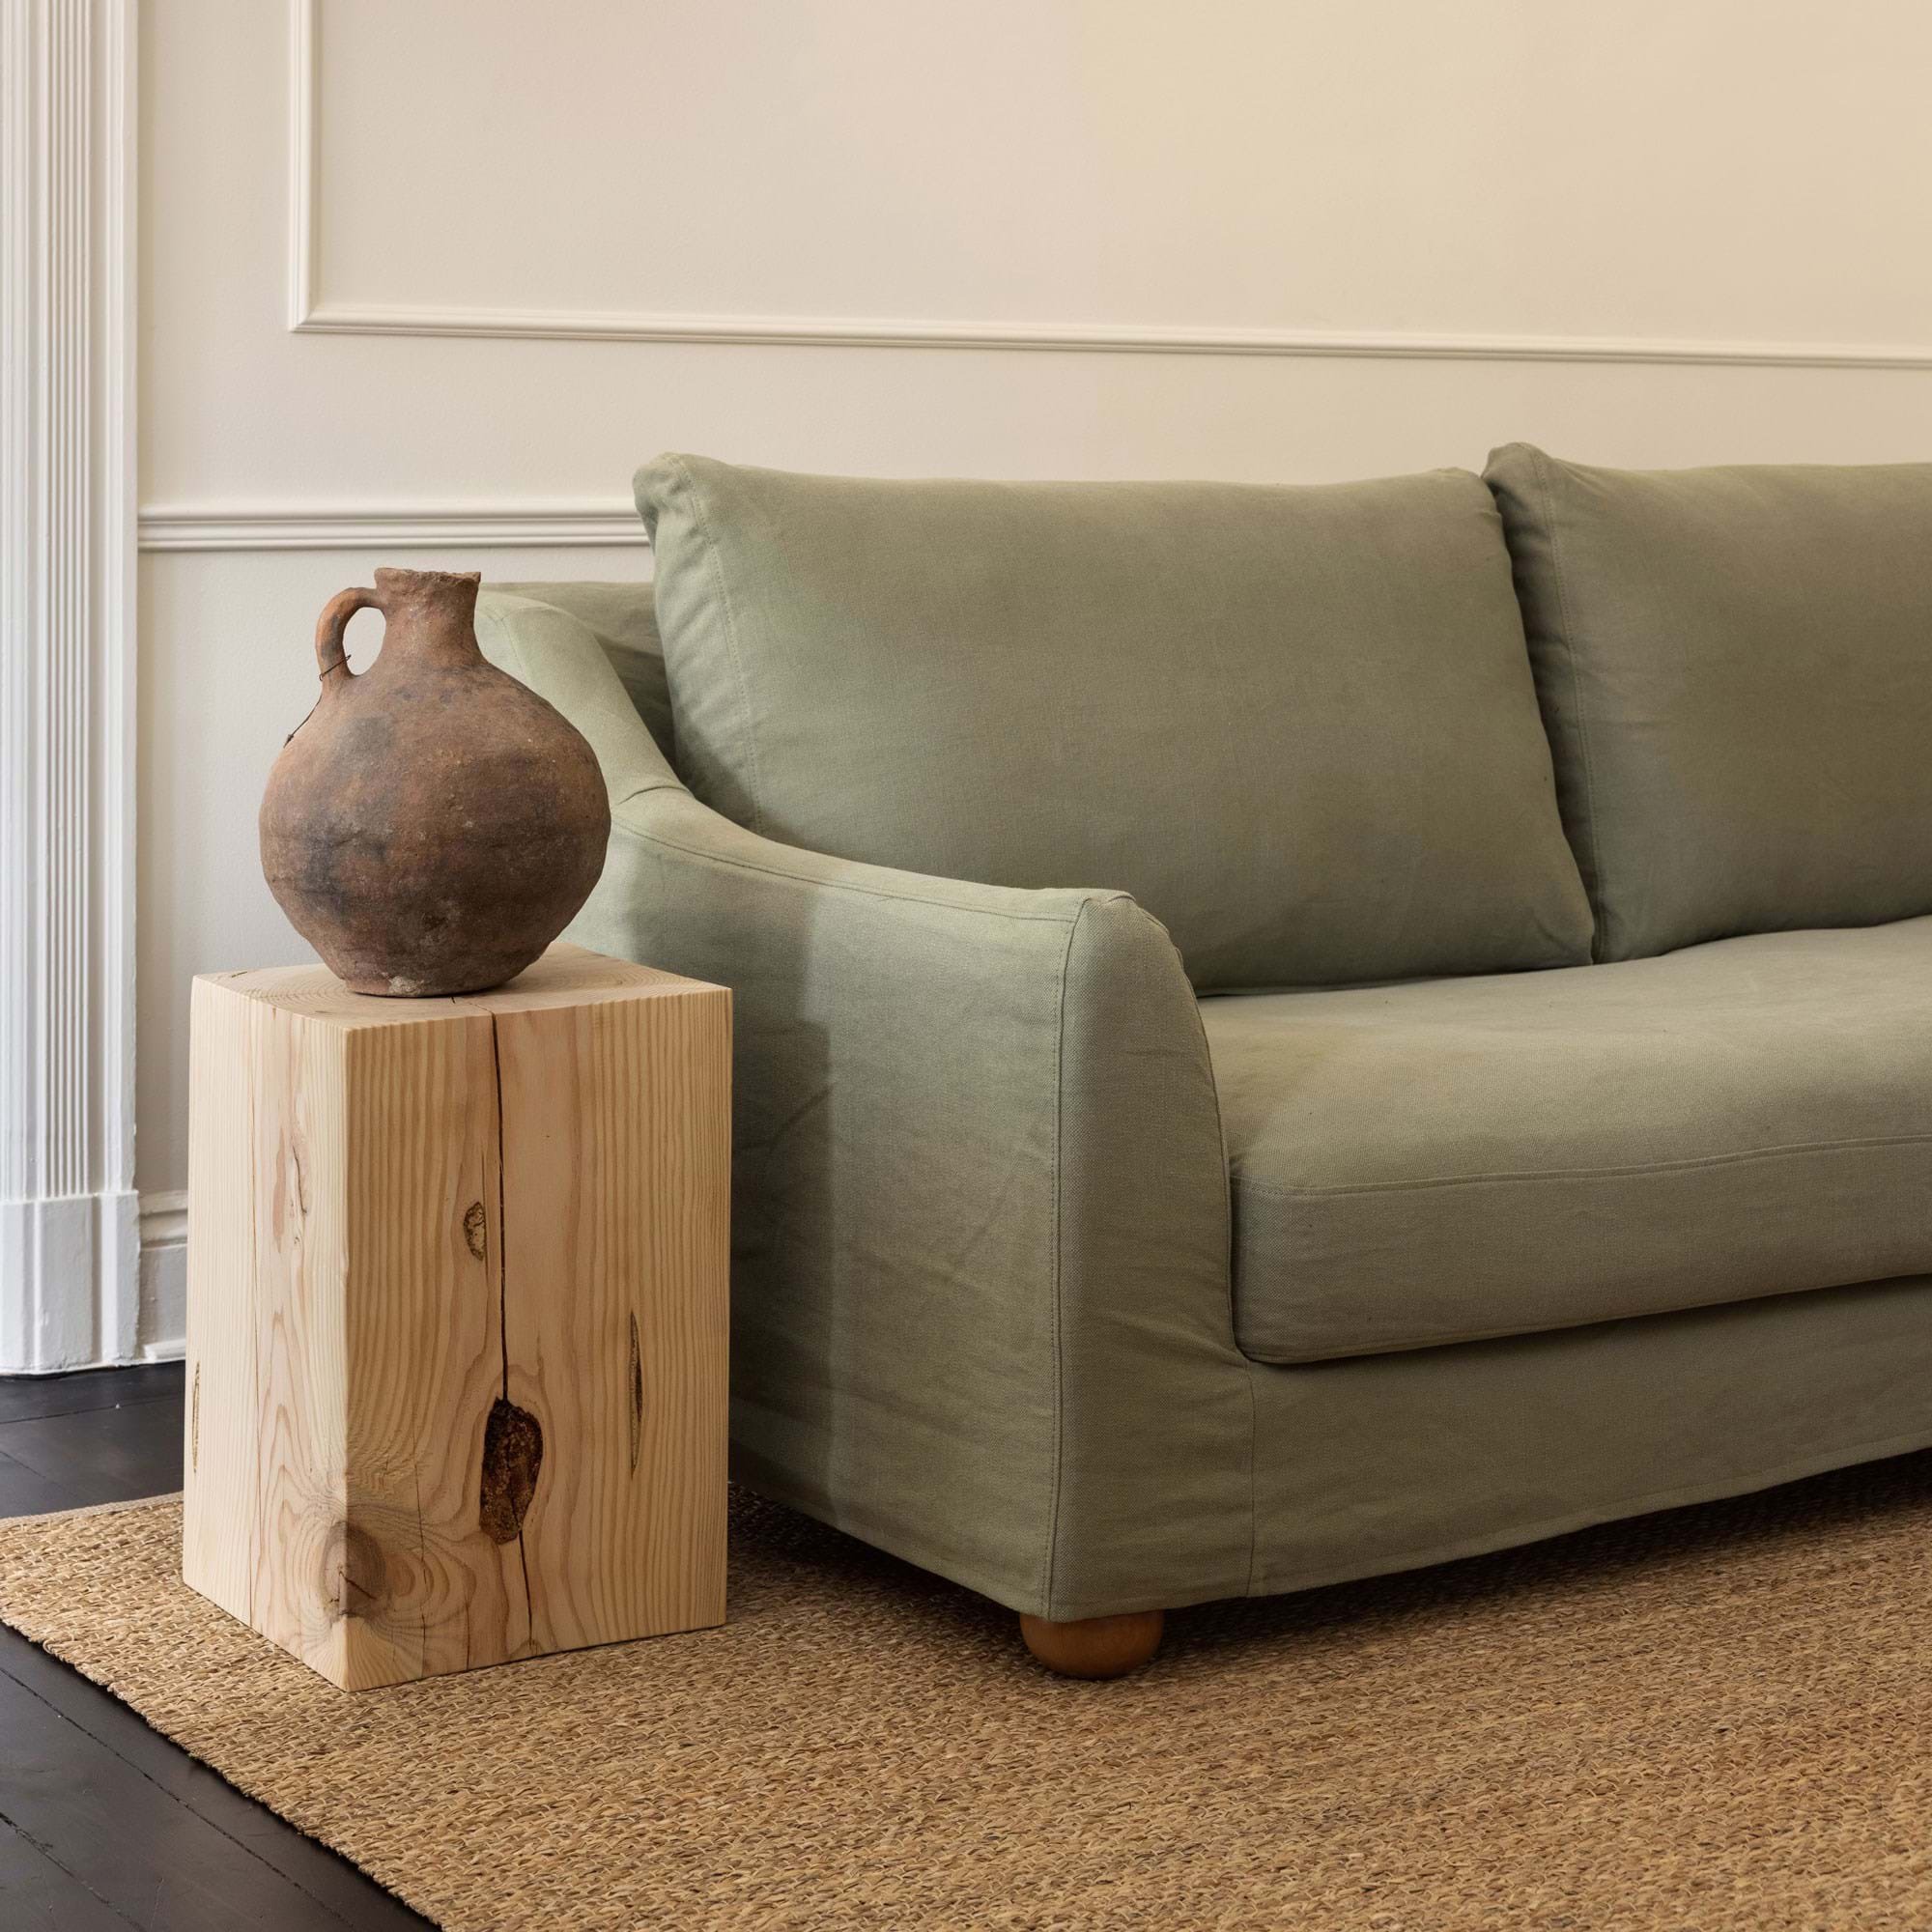 Gambe per mobili per trasformare il tuo divano. Di Bemz.